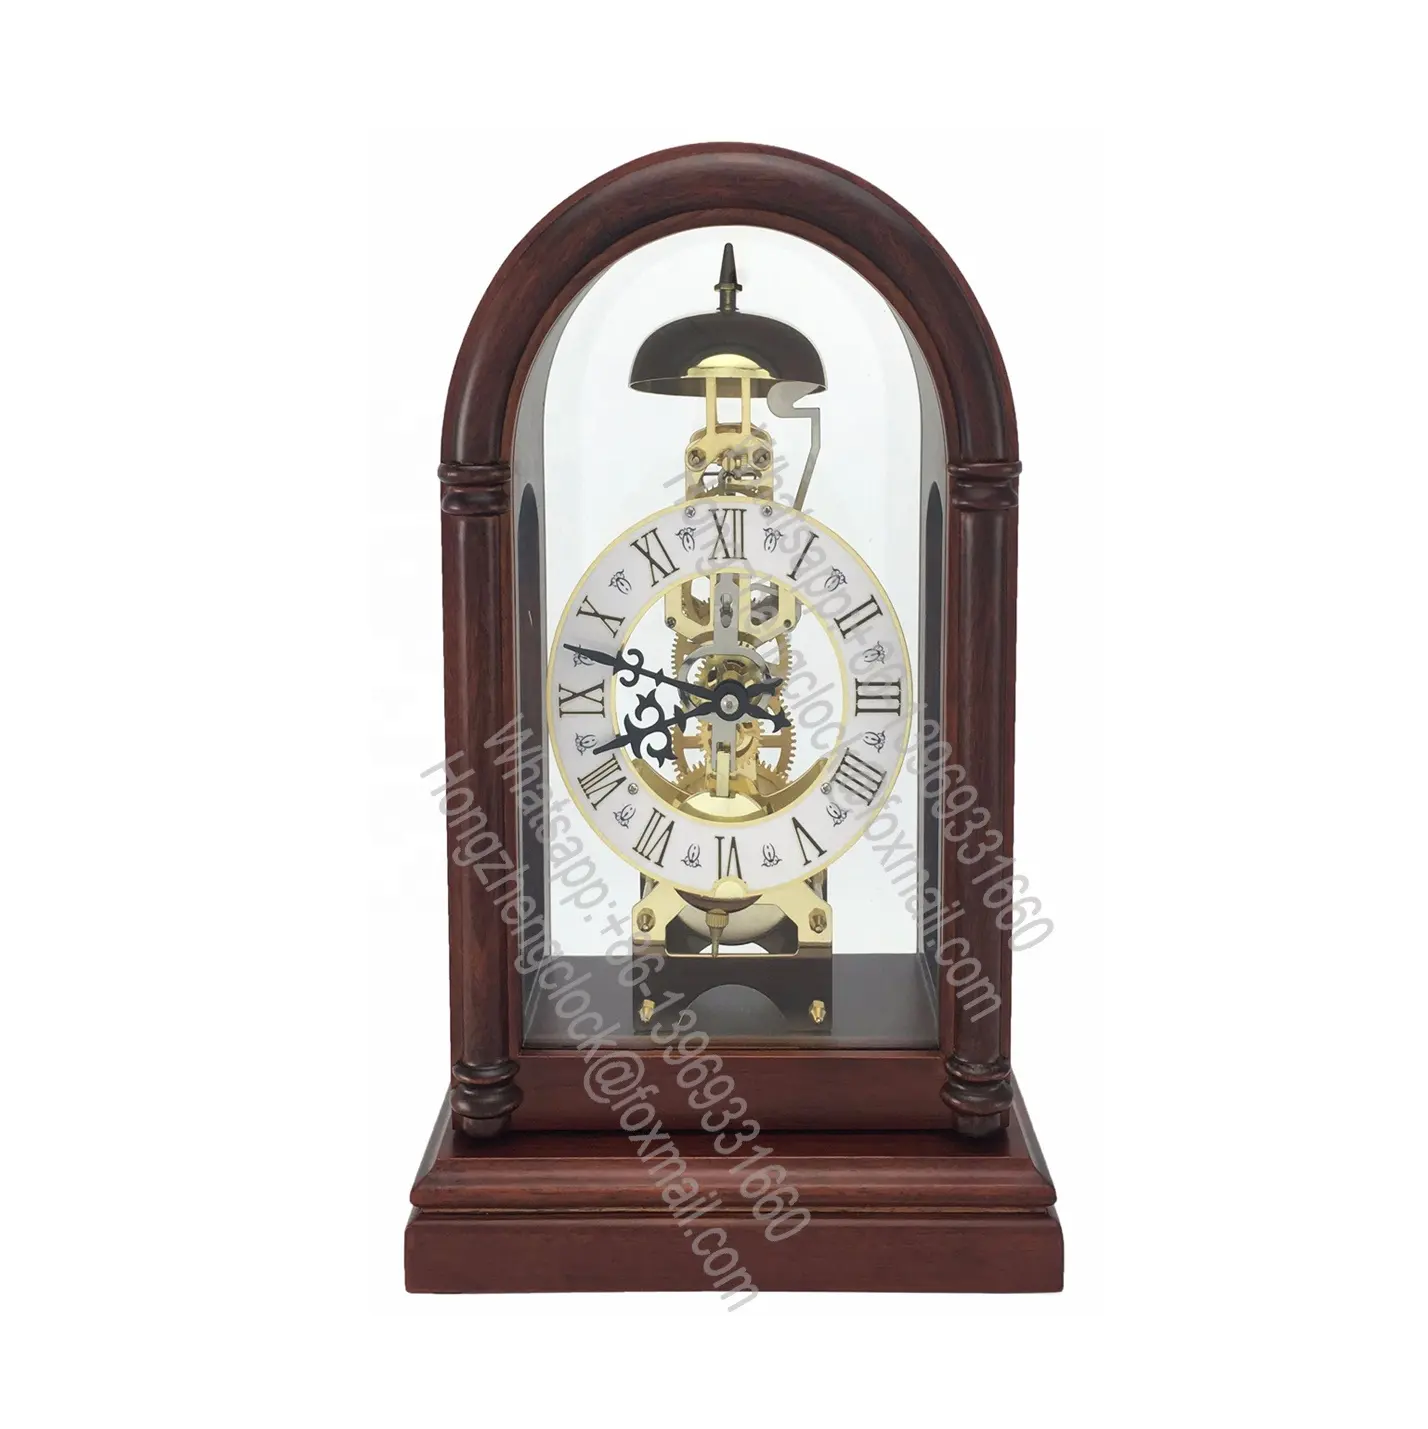 Horloge de table Mantel standard Chiffres romains noirs sur un cadran en métal On/off et contrôle du volume pour les carillons